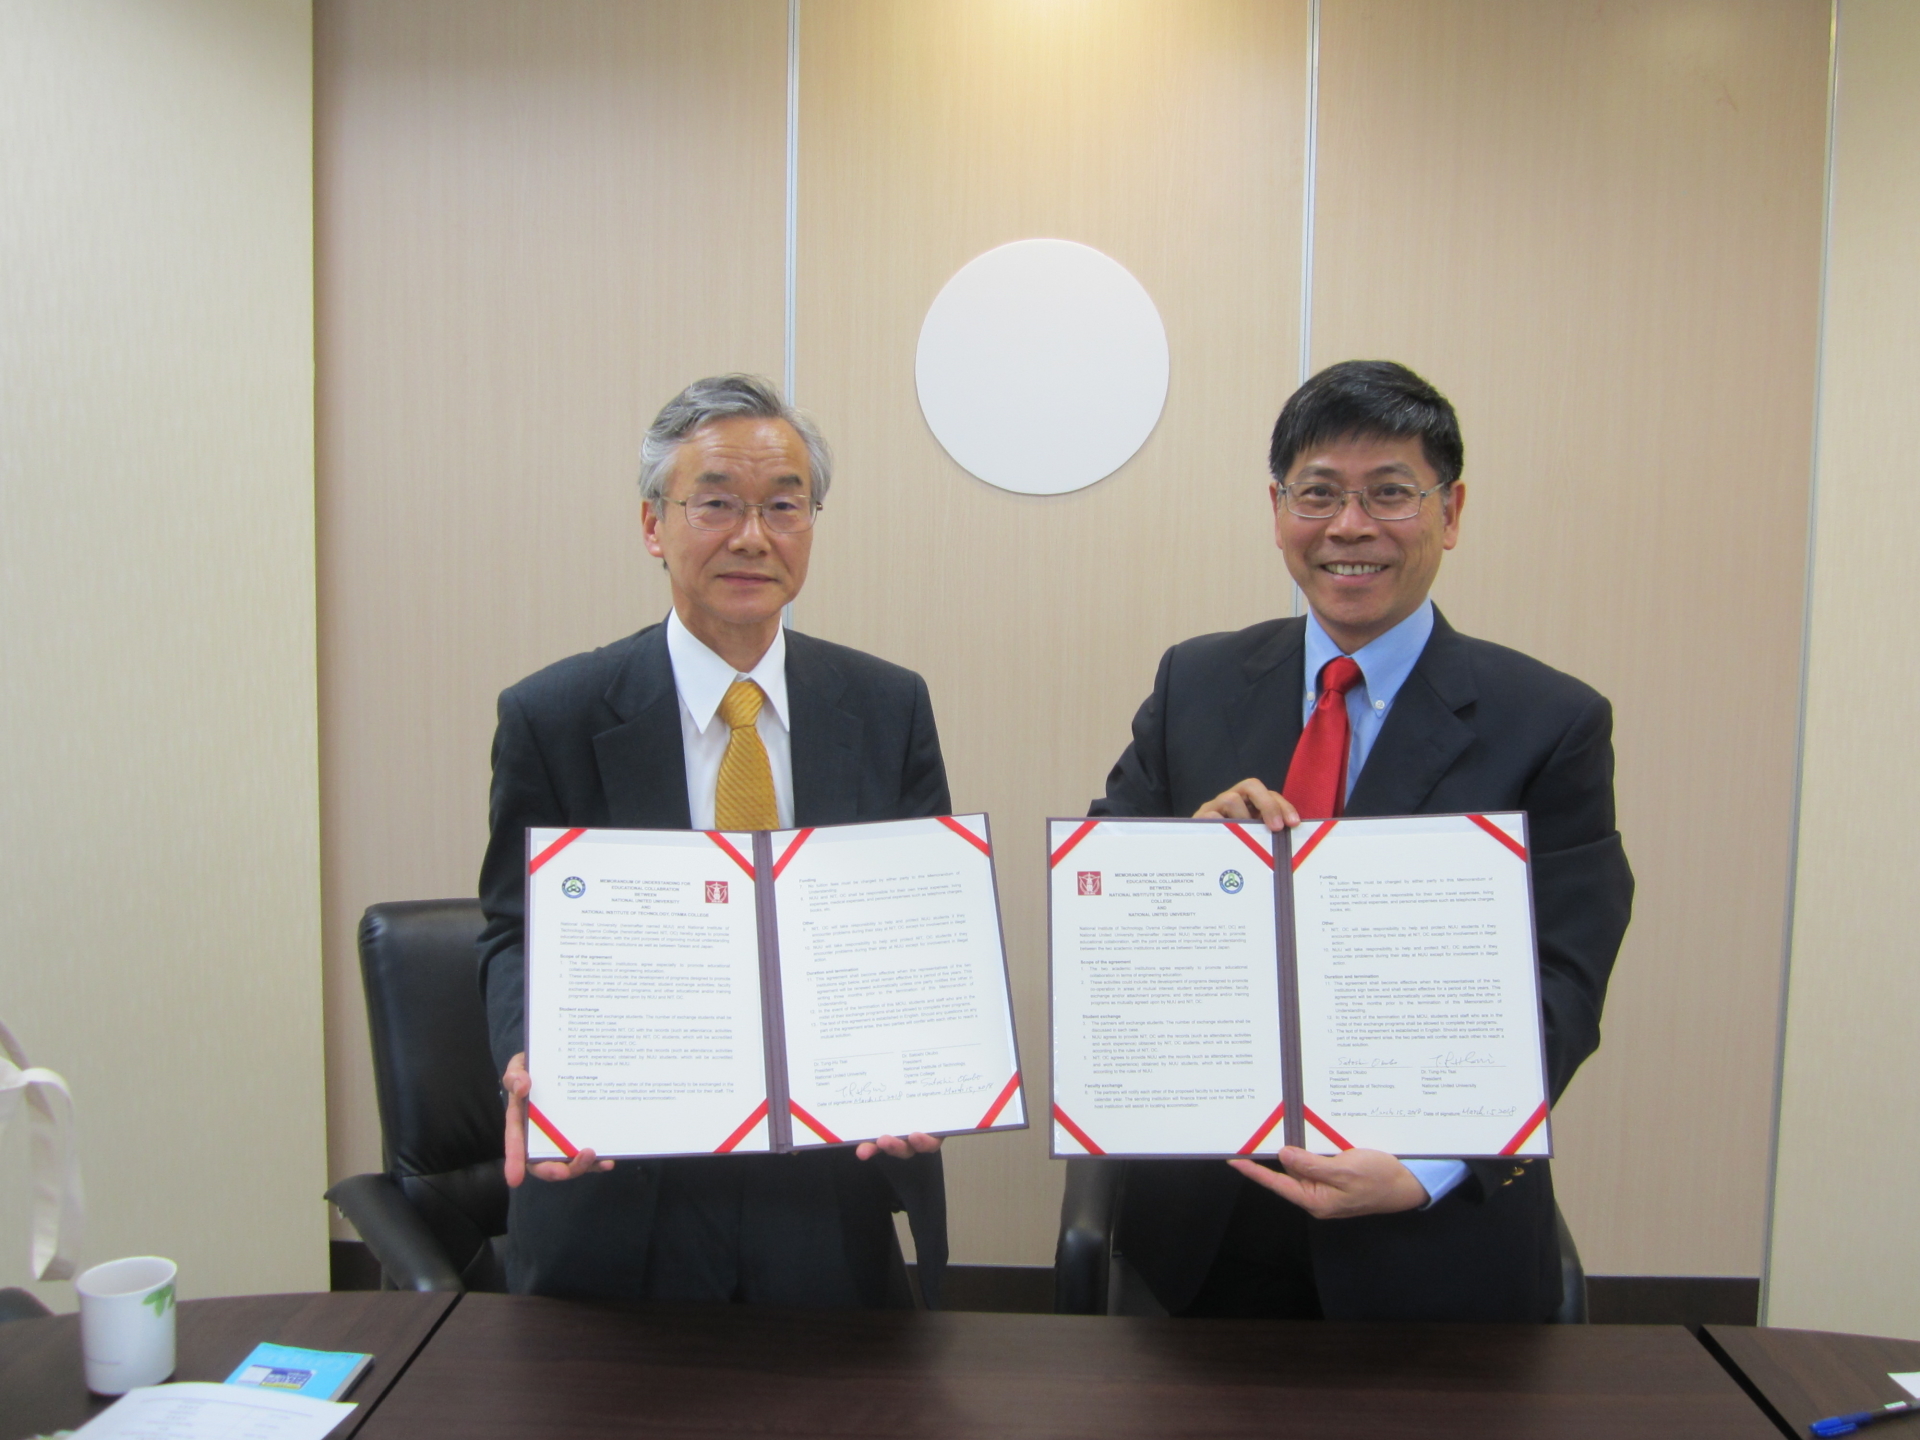 圖一、(左)小山高專校長Satoshi OKUBO代表與(右)國立聯合大學校長蔡東湖簽約完成